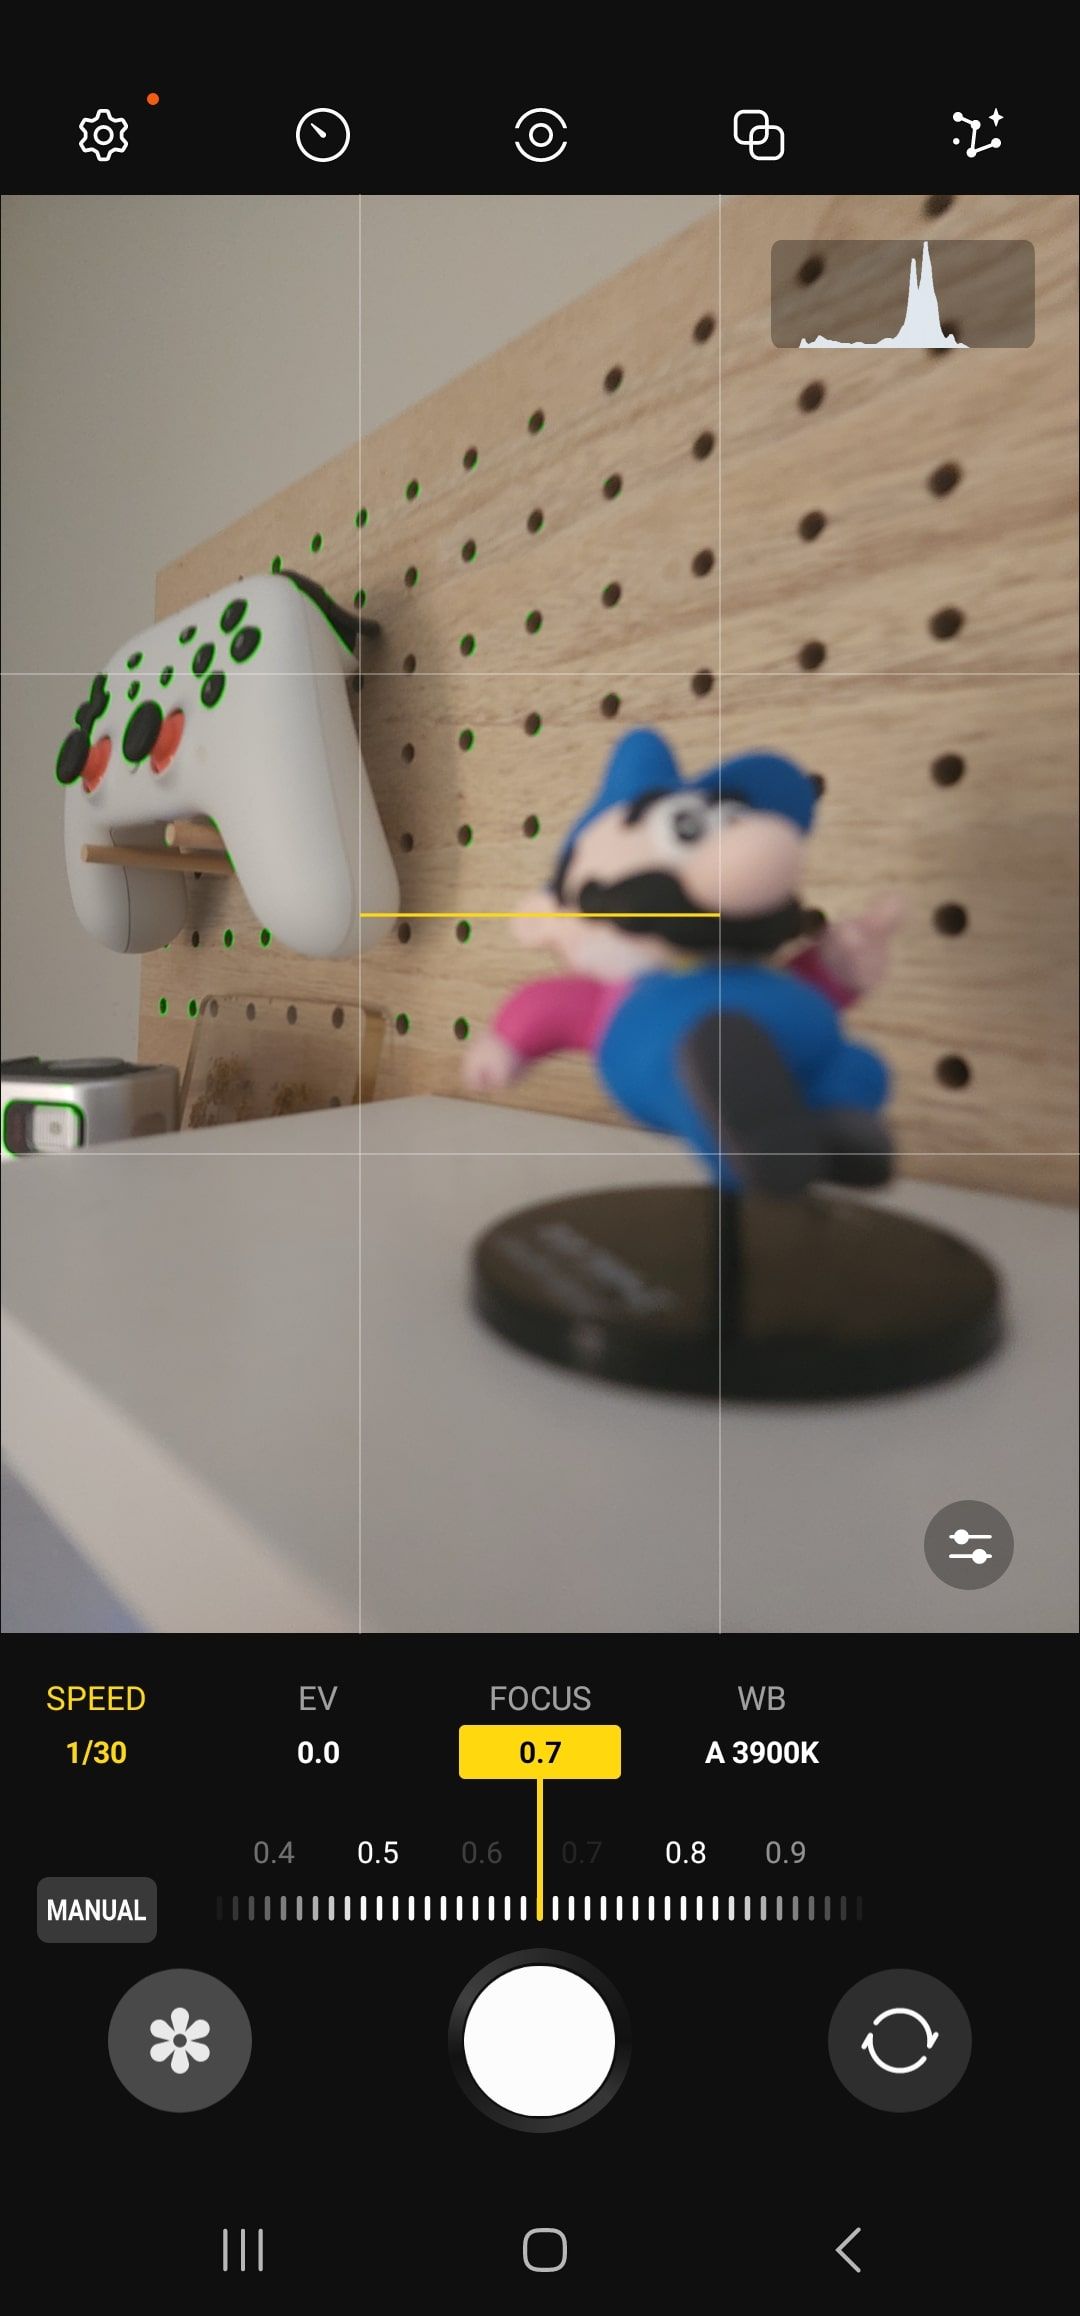 Aplicativo Samsung Expert RAW tirando uma foto de um controlador de jogo, longe da câmera.